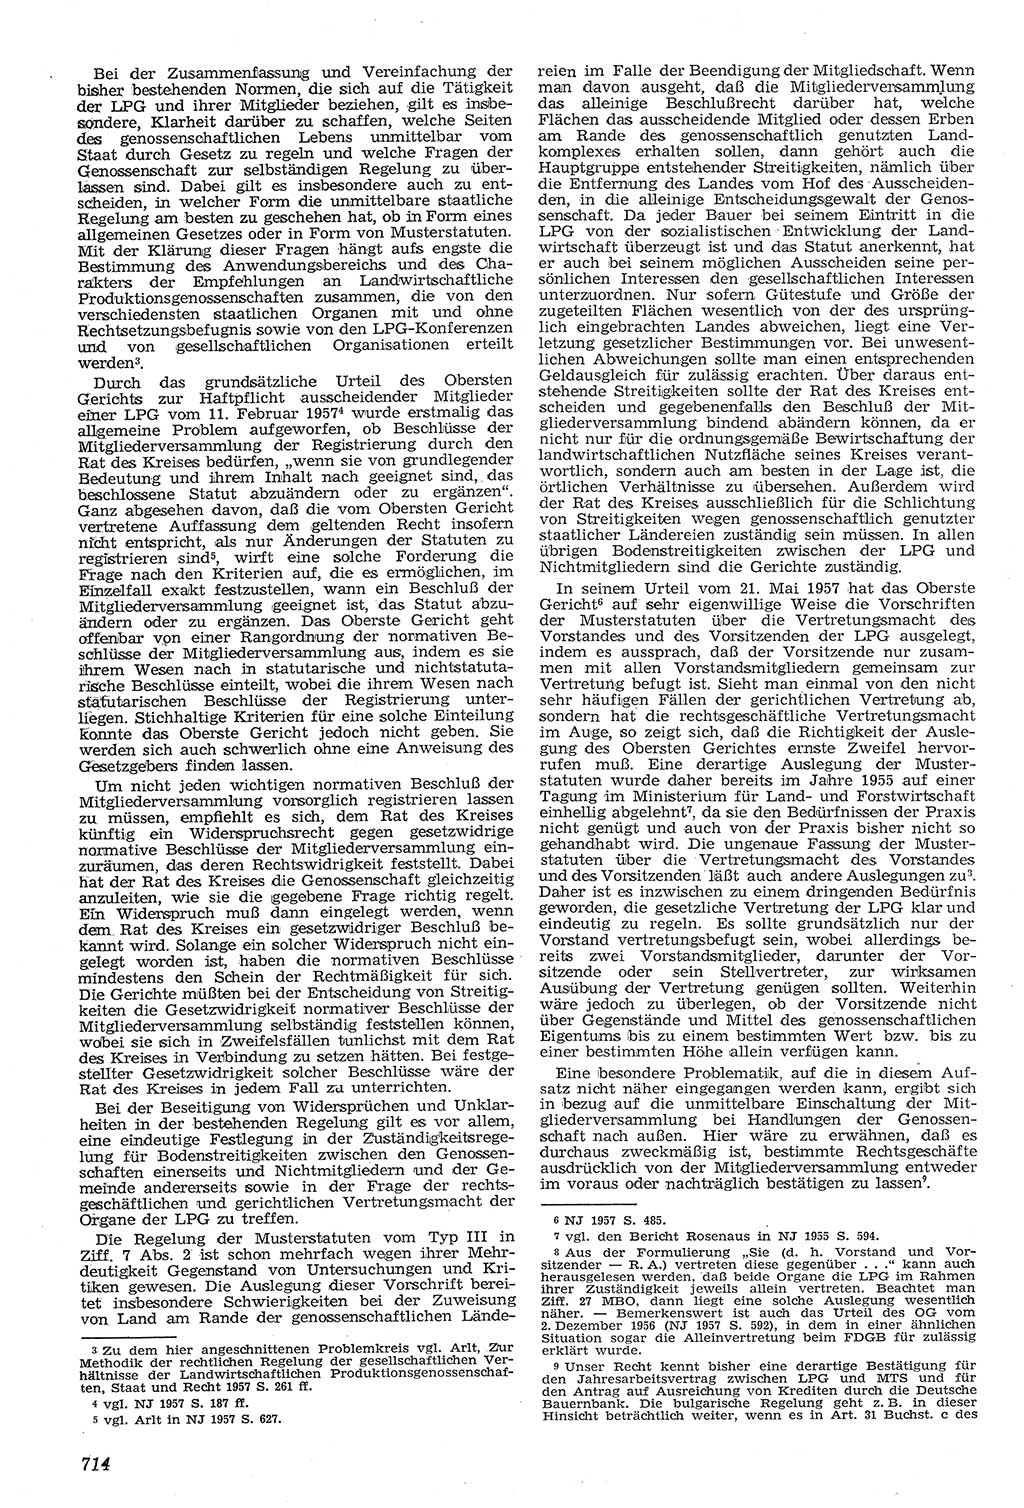 Neue Justiz (NJ), Zeitschrift für Recht und Rechtswissenschaft [Deutsche Demokratische Republik (DDR)], 11. Jahrgang 1957, Seite 714 (NJ DDR 1957, S. 714)